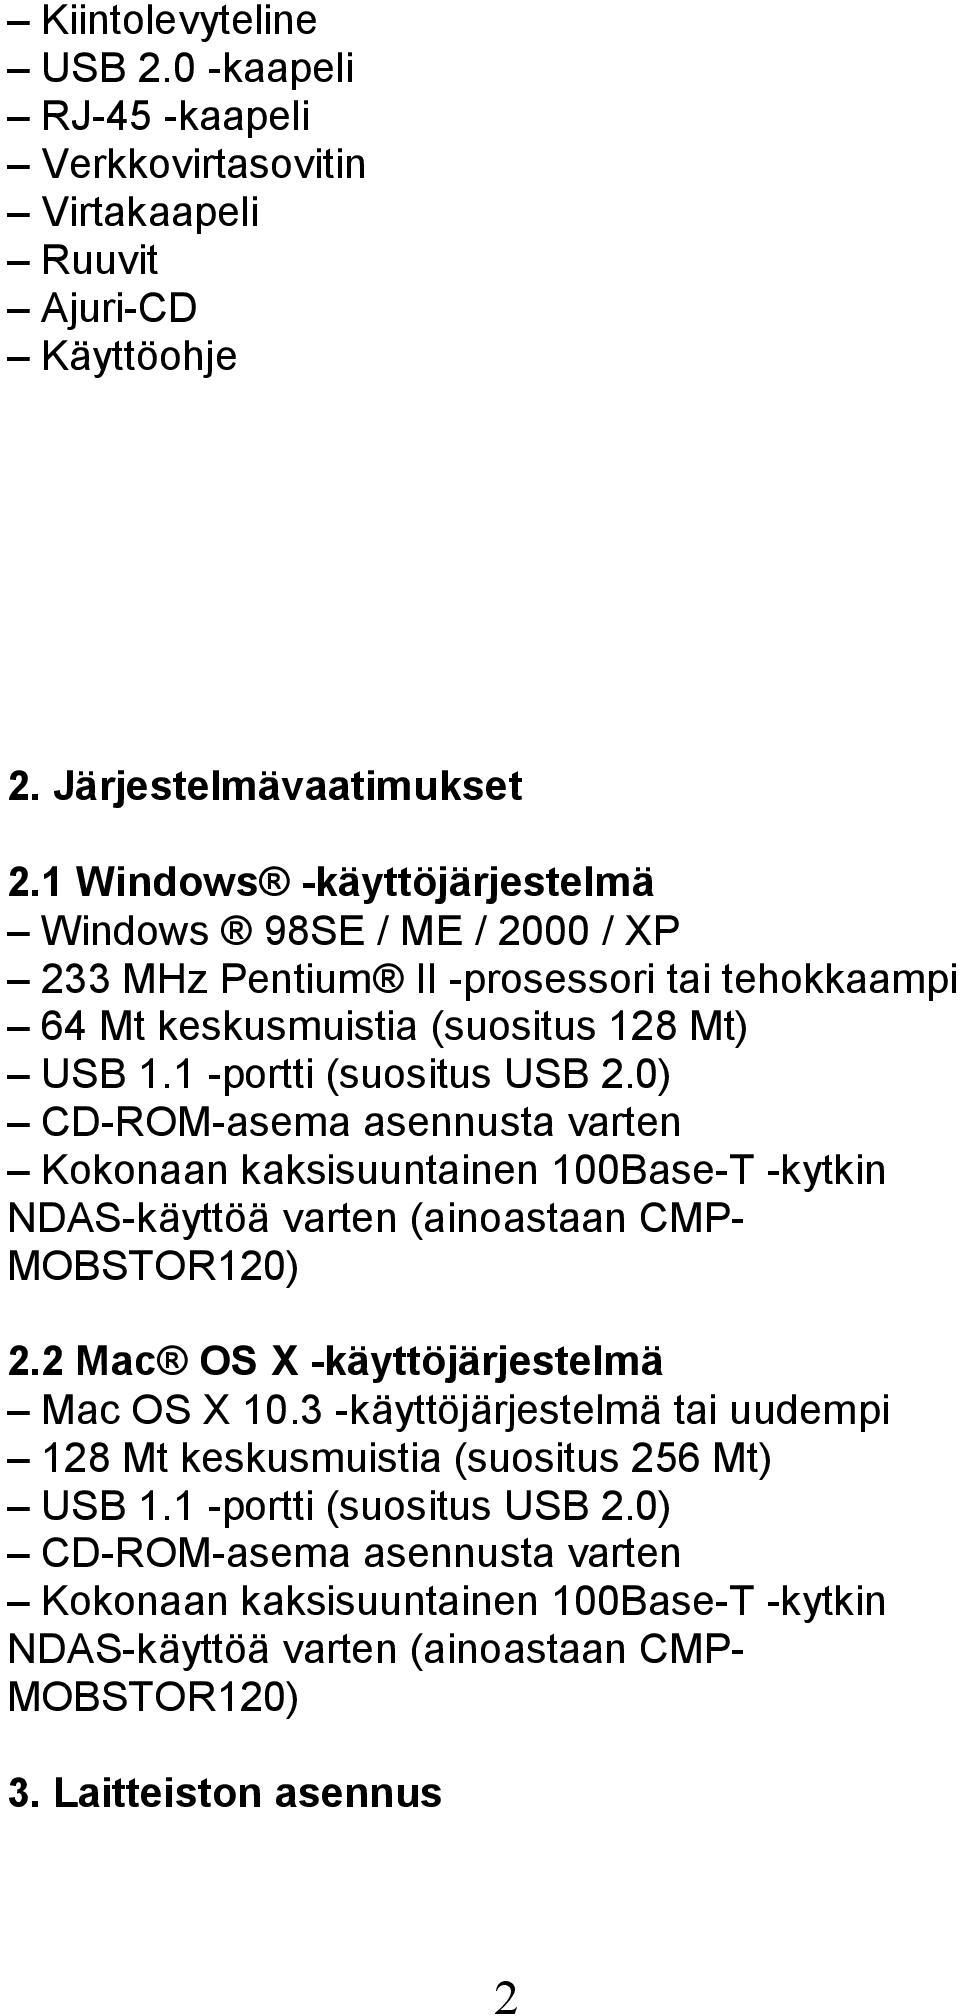 0) CD-ROM-asema asennusta varten Kokonaan kaksisuuntainen 100Base-T -kytkin NDAS-käyttöä varten (ainoastaan CMP- MOBSTOR120) 2.2 Mac OS X -käyttöjärjestelmä Mac OS X 10.